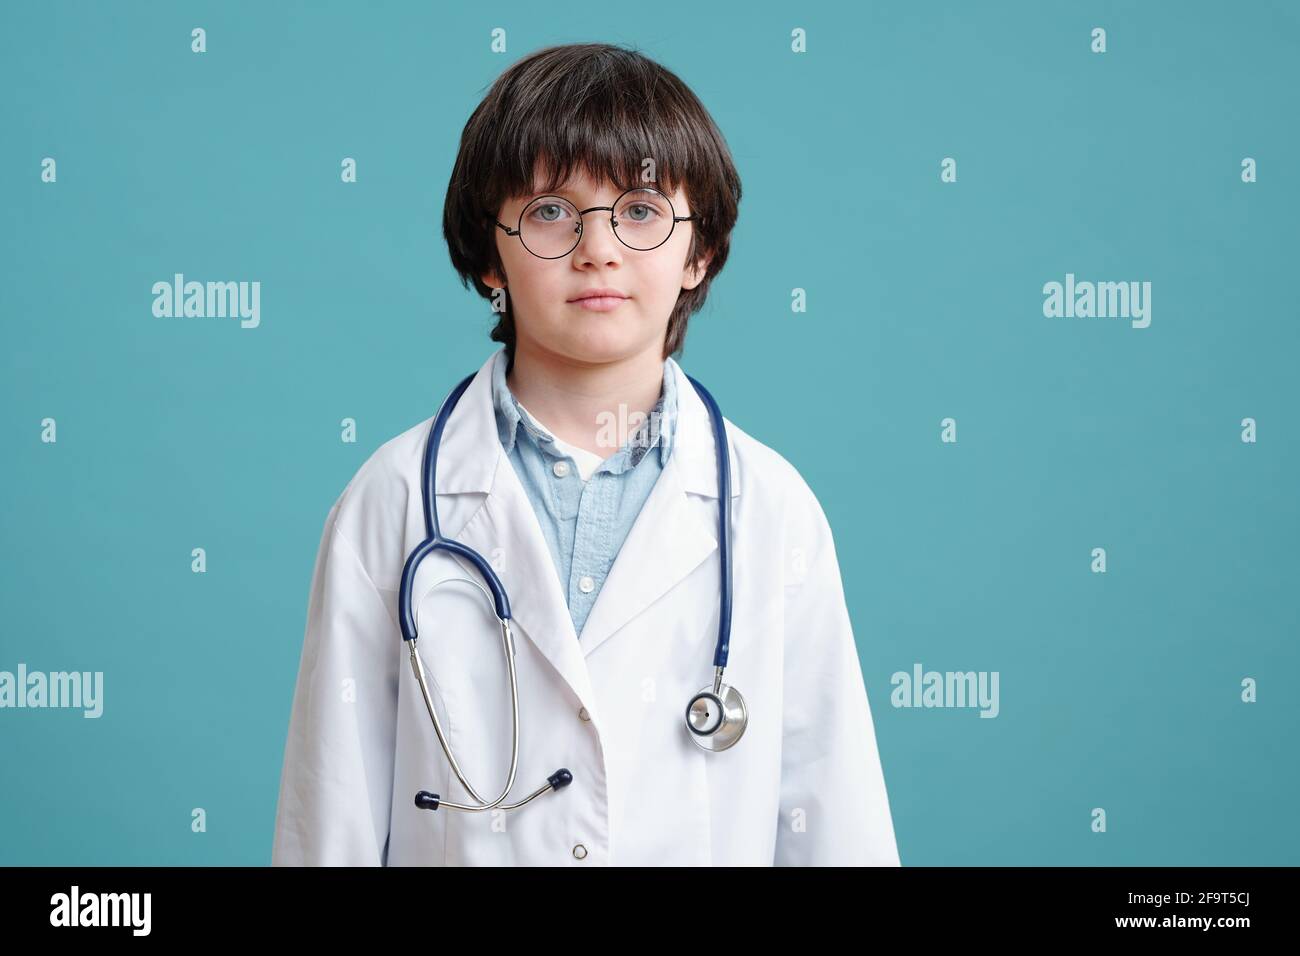 Ritratto del ragazzino in camice bianco che gioca in medico guardando la fotocamera sullo sfondo blu Foto Stock